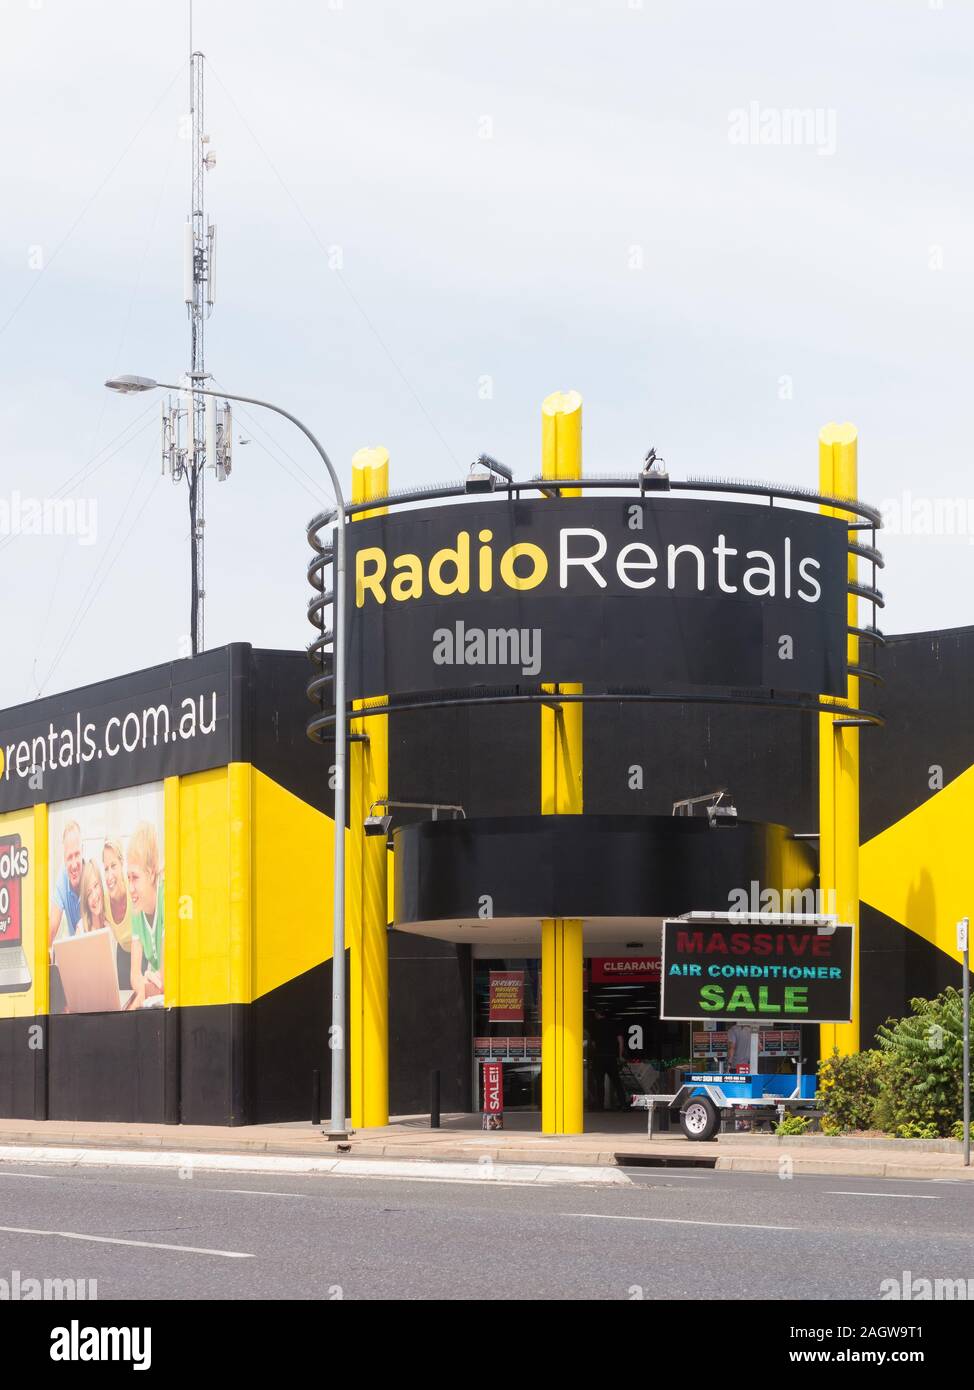 Vue de l'entrée d'un magasin de location de Radio sur Main North Road en perspective, l'Australie du Sud, Australie. Banque D'Images